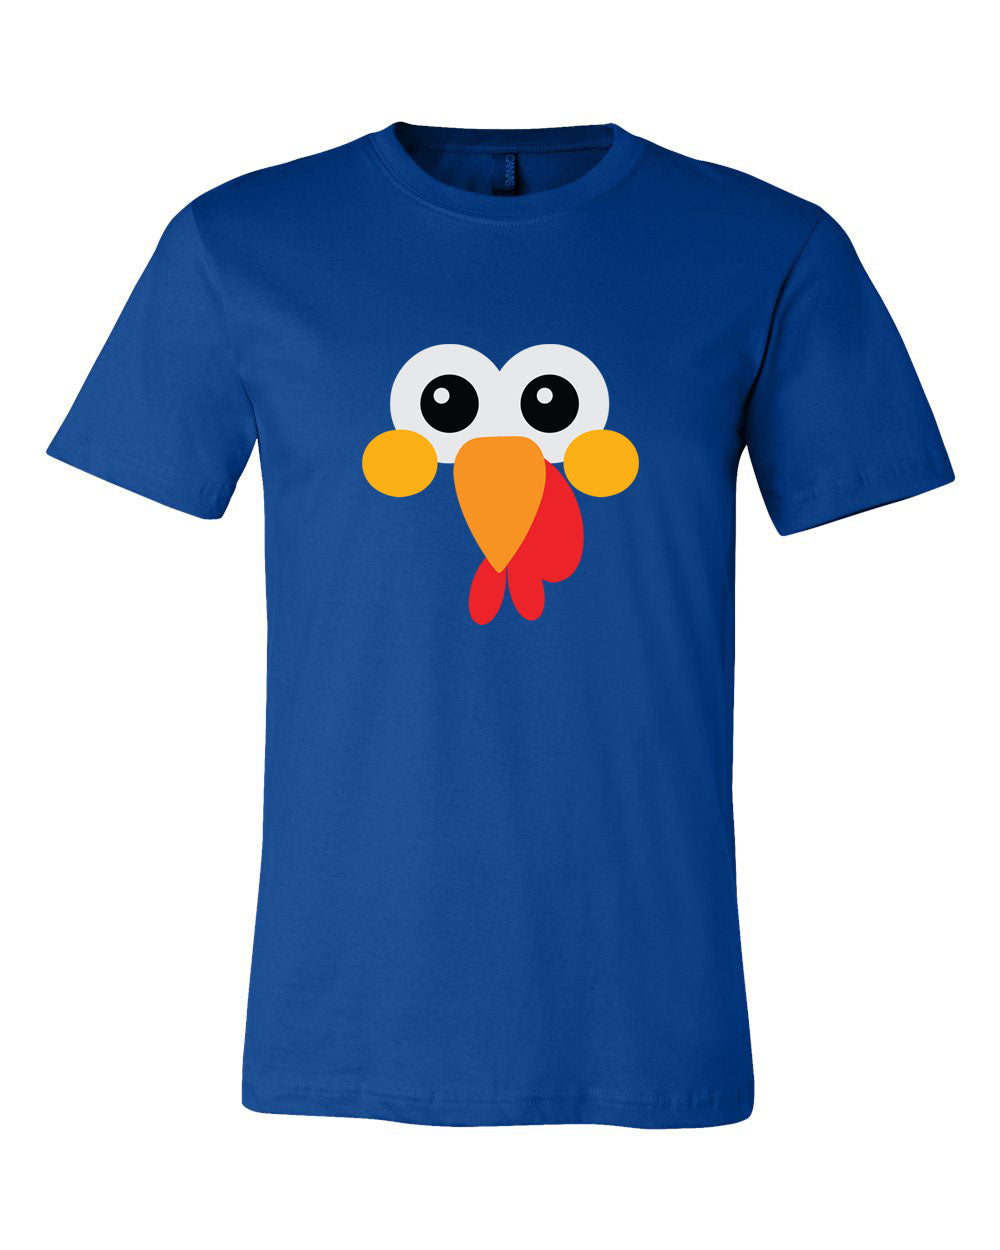 Turkey Face T-Shirt Design 7